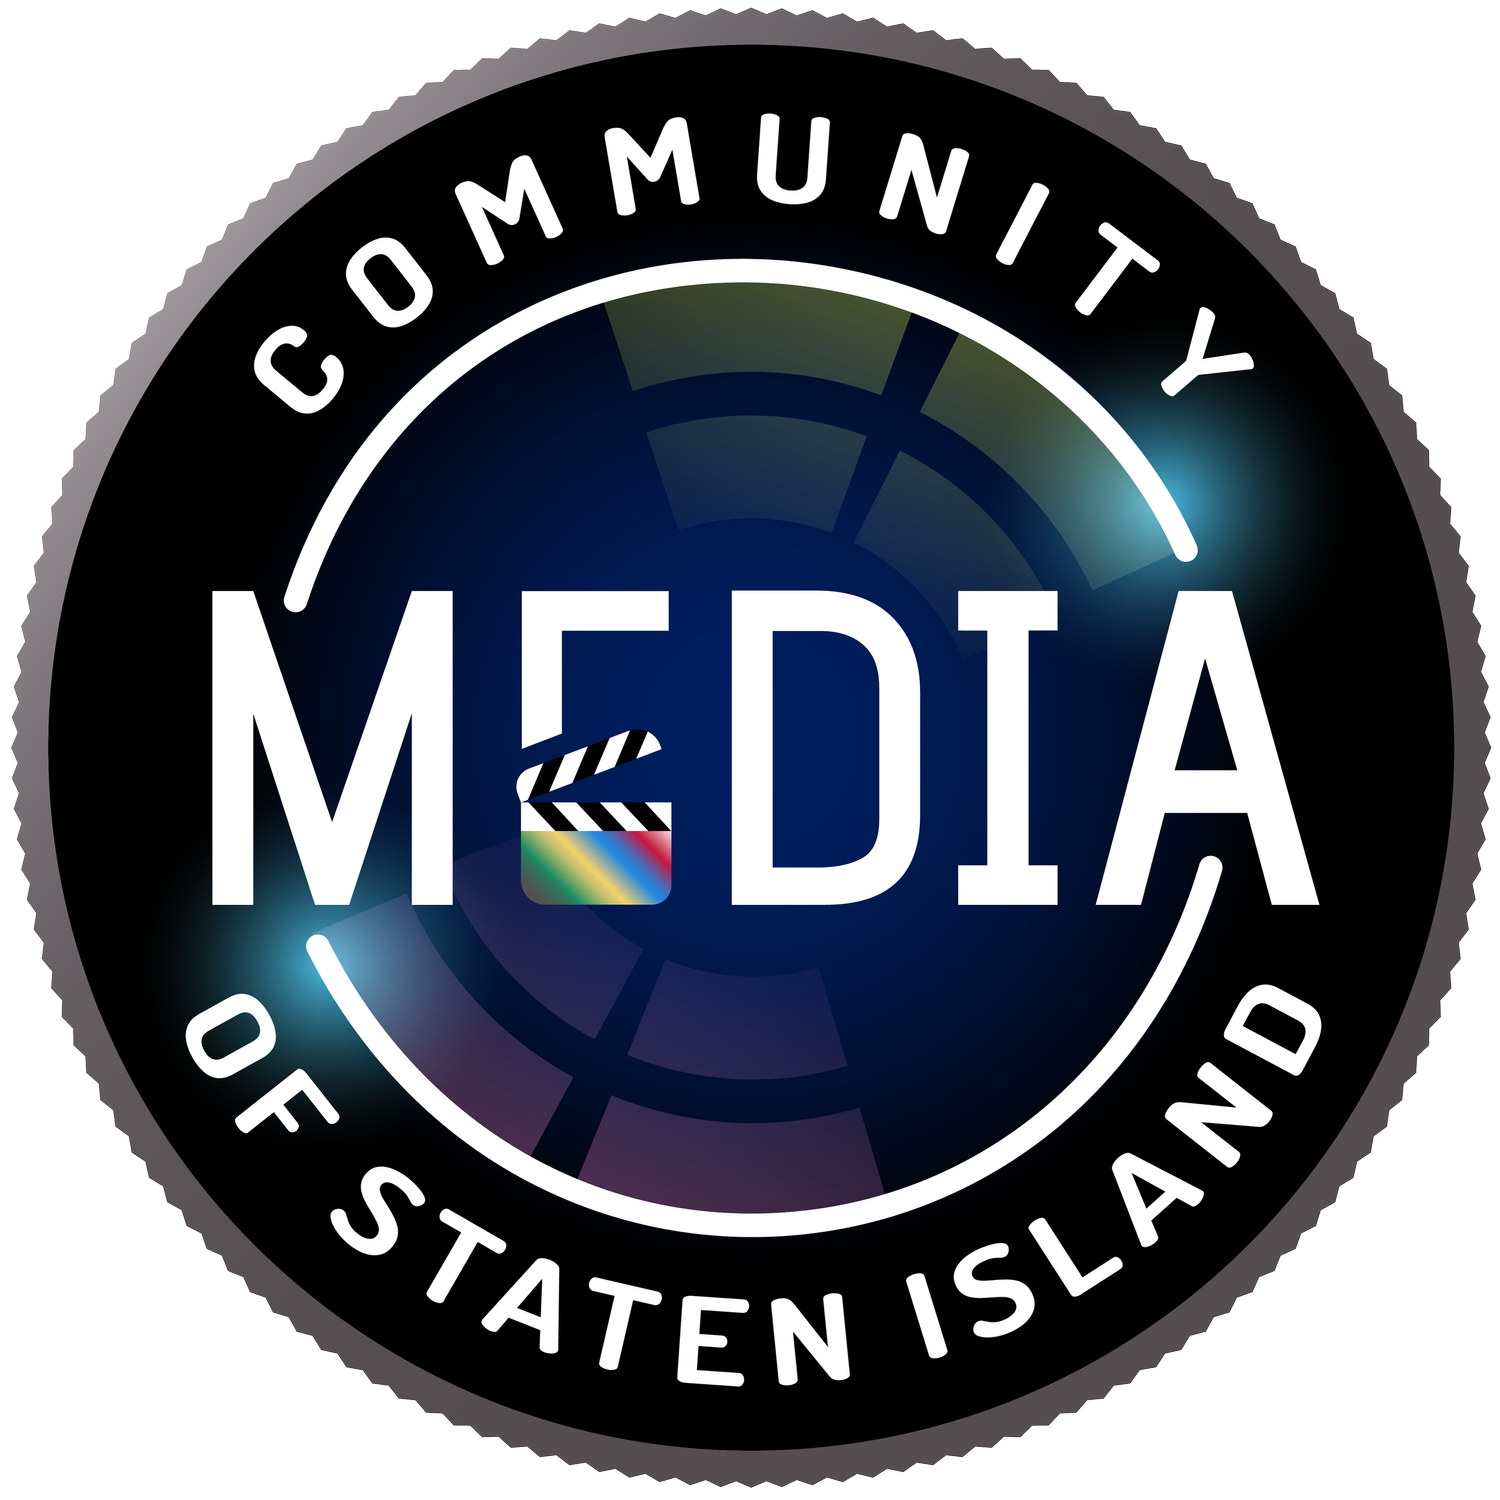 Community Media of Staten Island